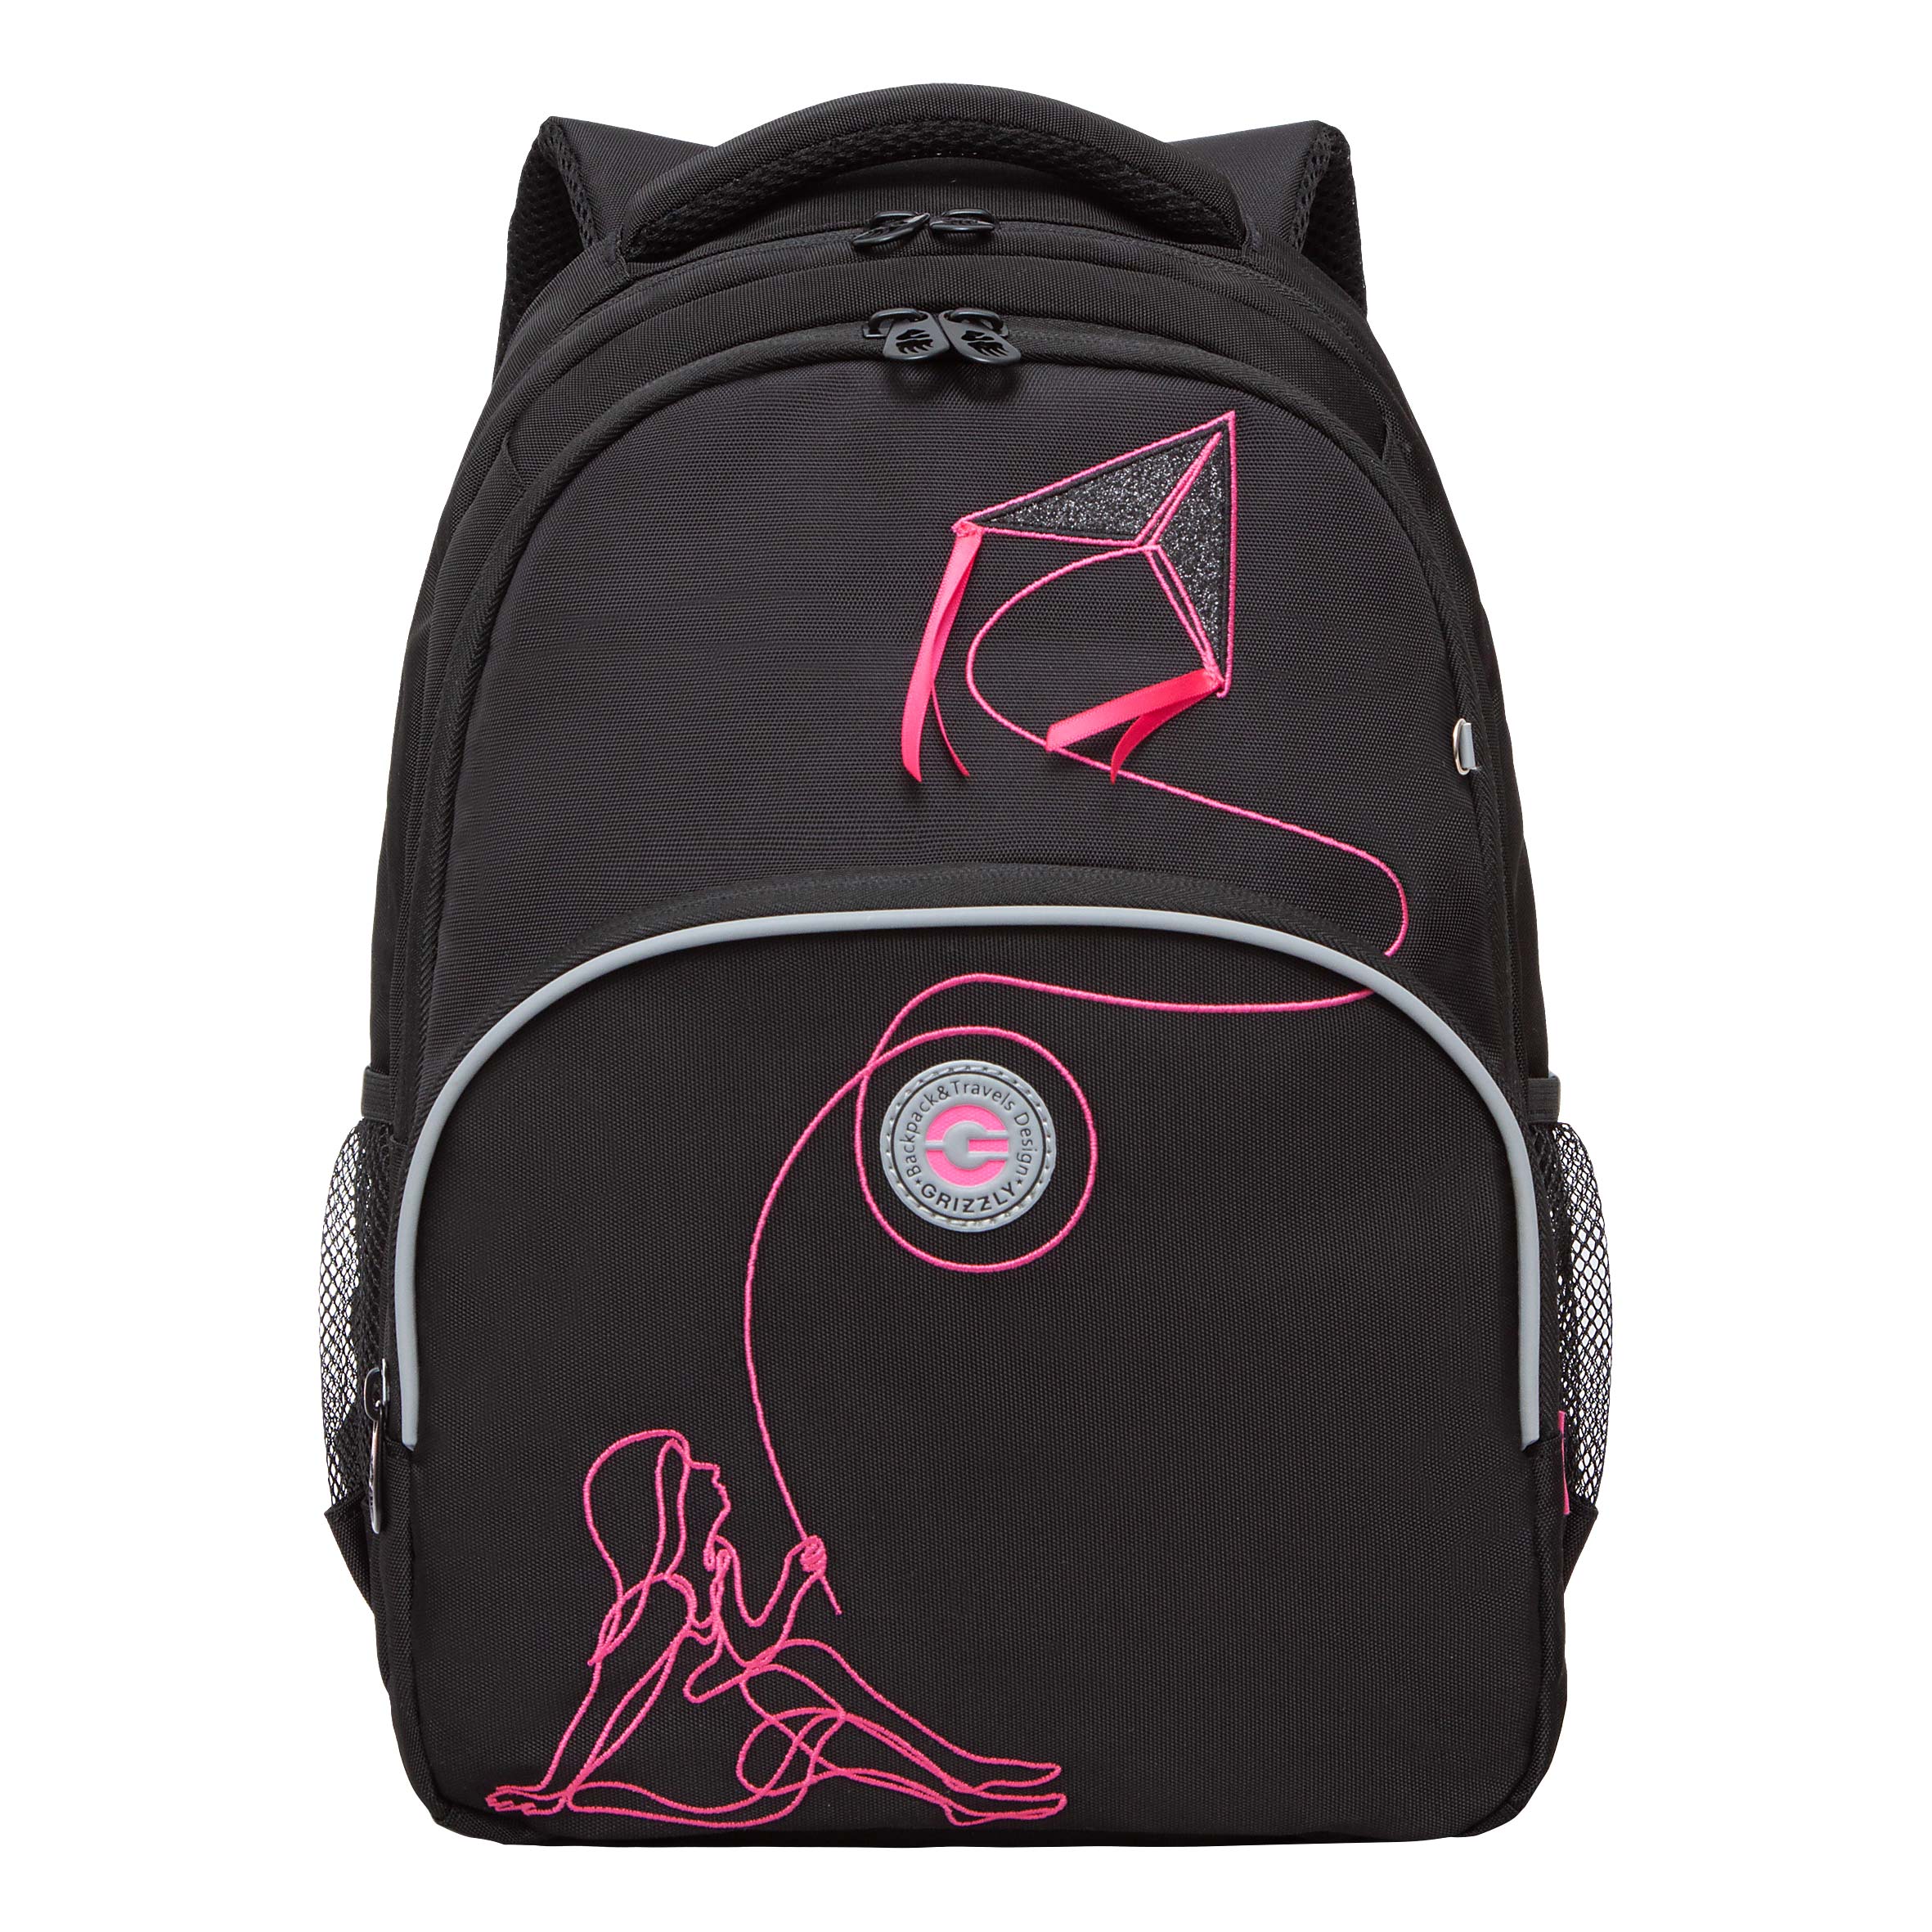 Рюкзак Grizzly школьный для девочки RG-360-8 1 черный - фуксия рюкзак школьный grizzly с карманом для ноутбука 13 2 отделения для девочки rg 466 3 2